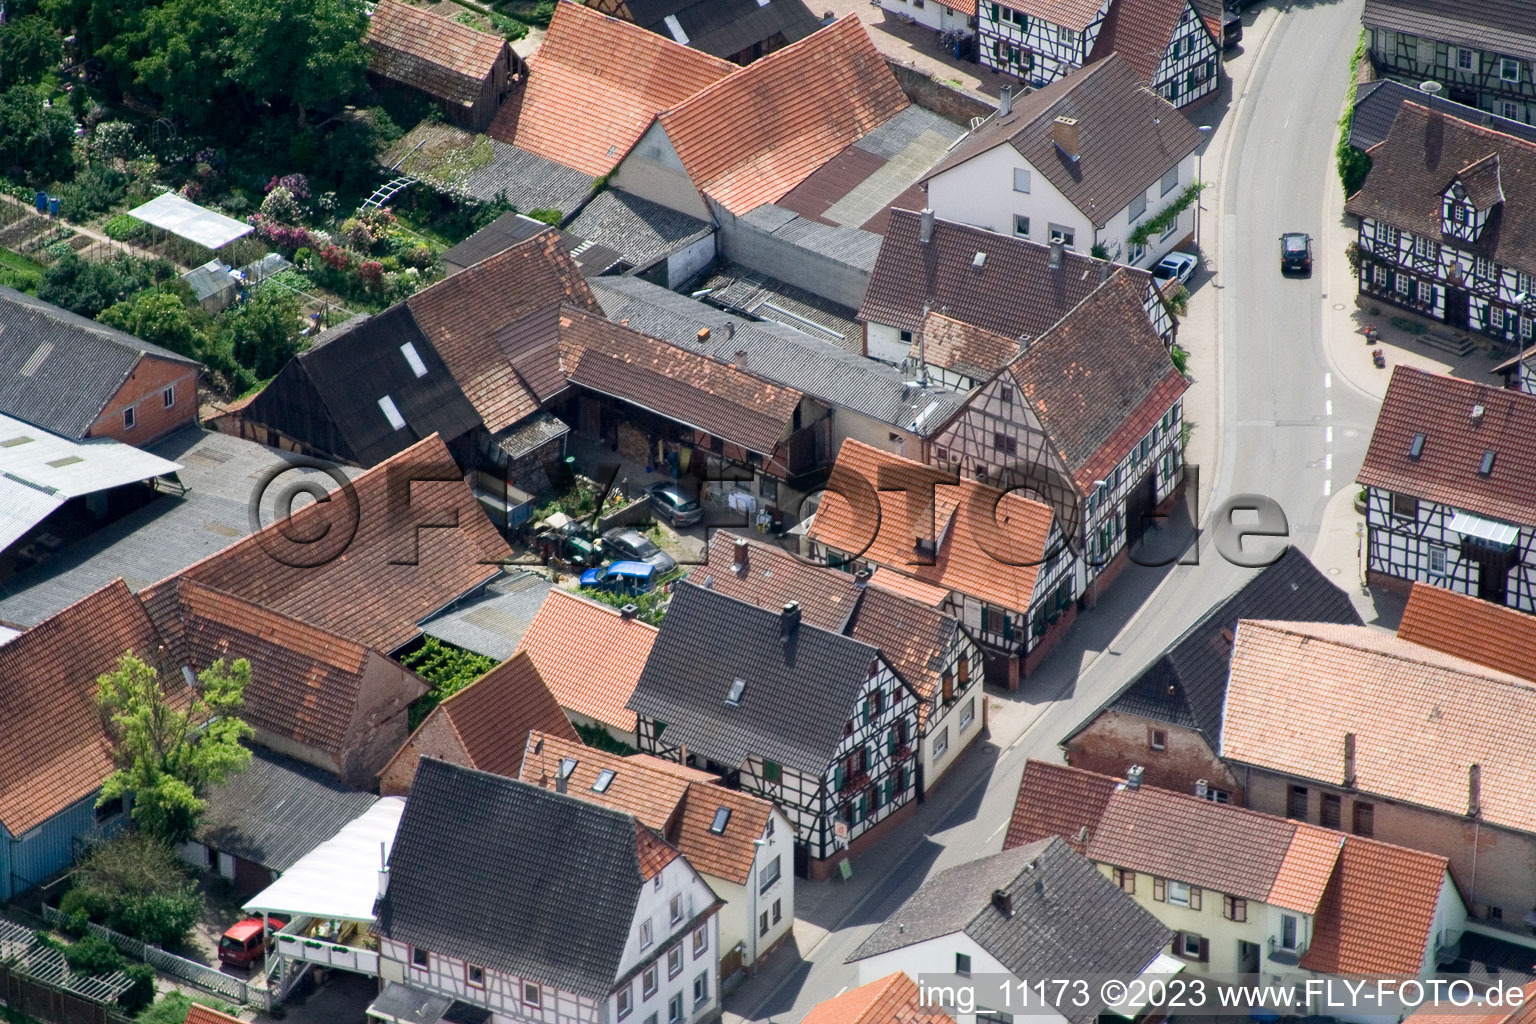 Winden im Bundesland Rheinland-Pfalz, Deutschland aus der Drohnenperspektive